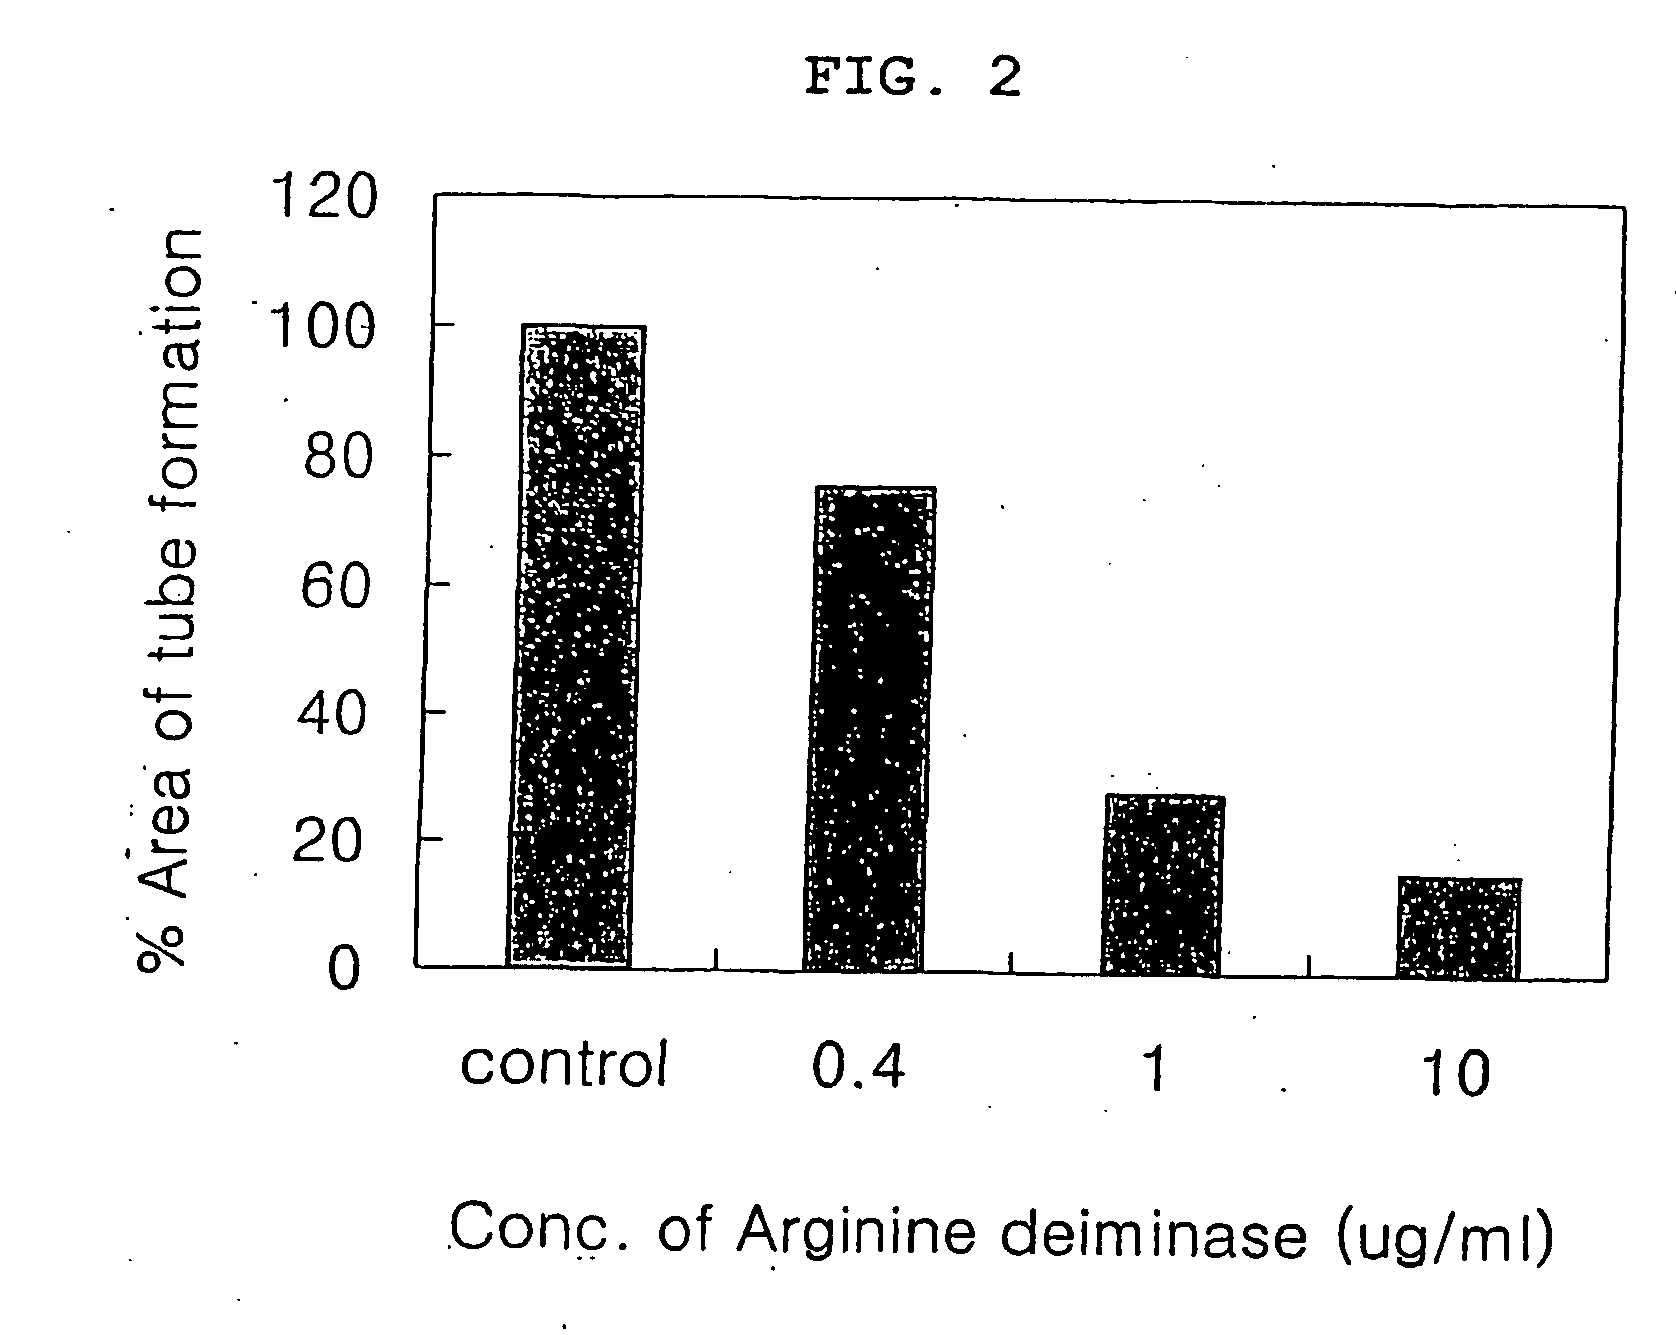 Pharmaceutical composition comprising arginine deiminase for inhibiting angiogenesis